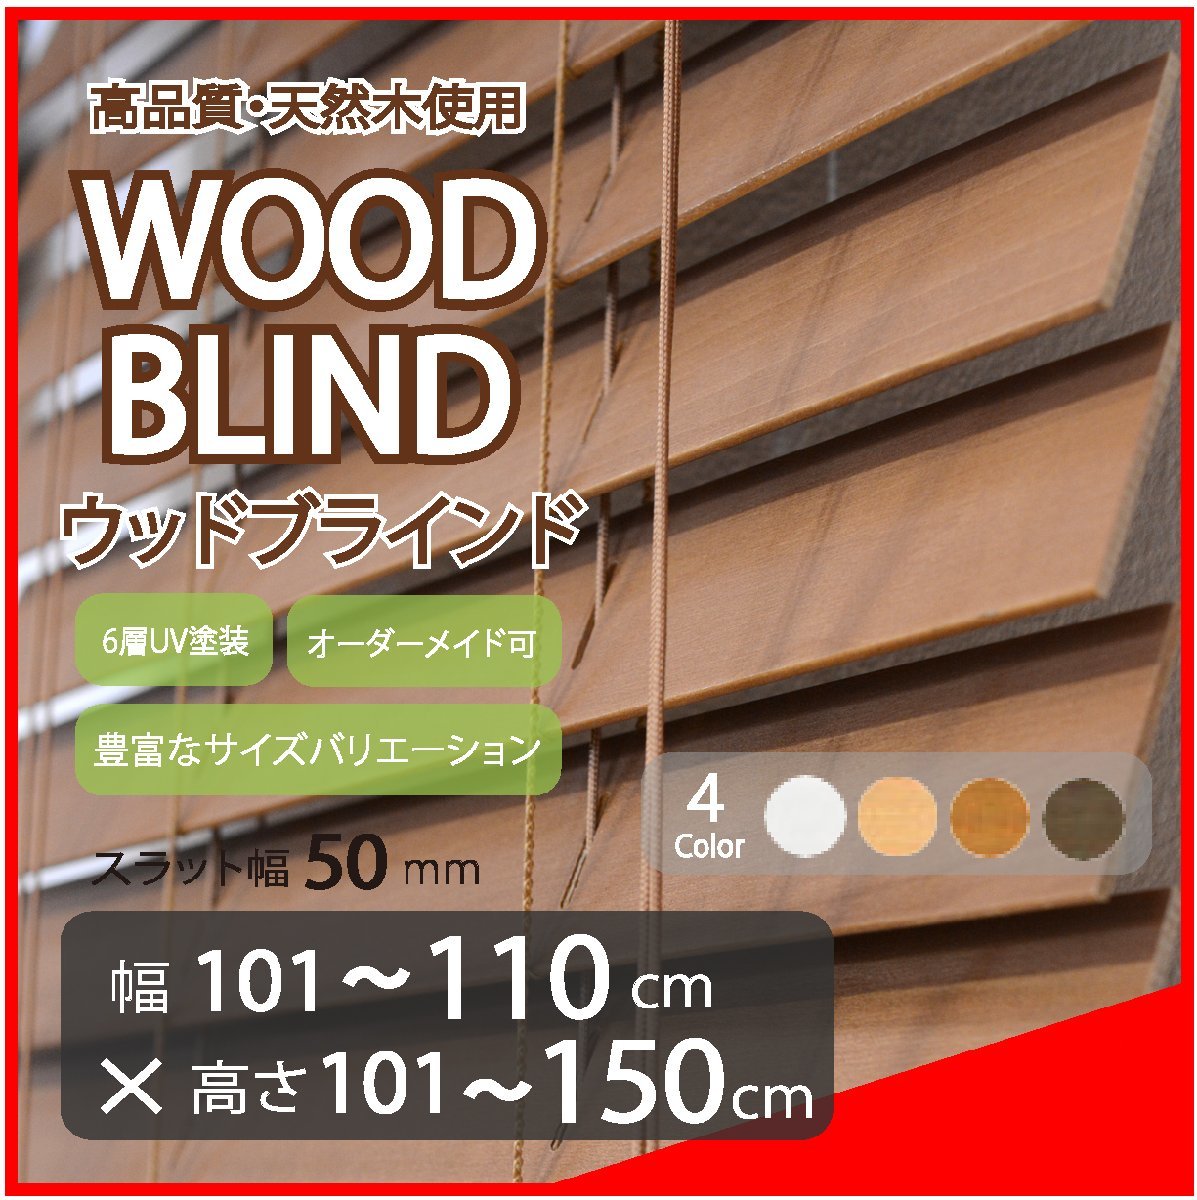 窓枠に合わせてサイズ加工が可能 高品質 木製 ウッド ブラインド オーダー可 スラット(羽根)幅50mm 幅101～110cm×高さ101～150cm